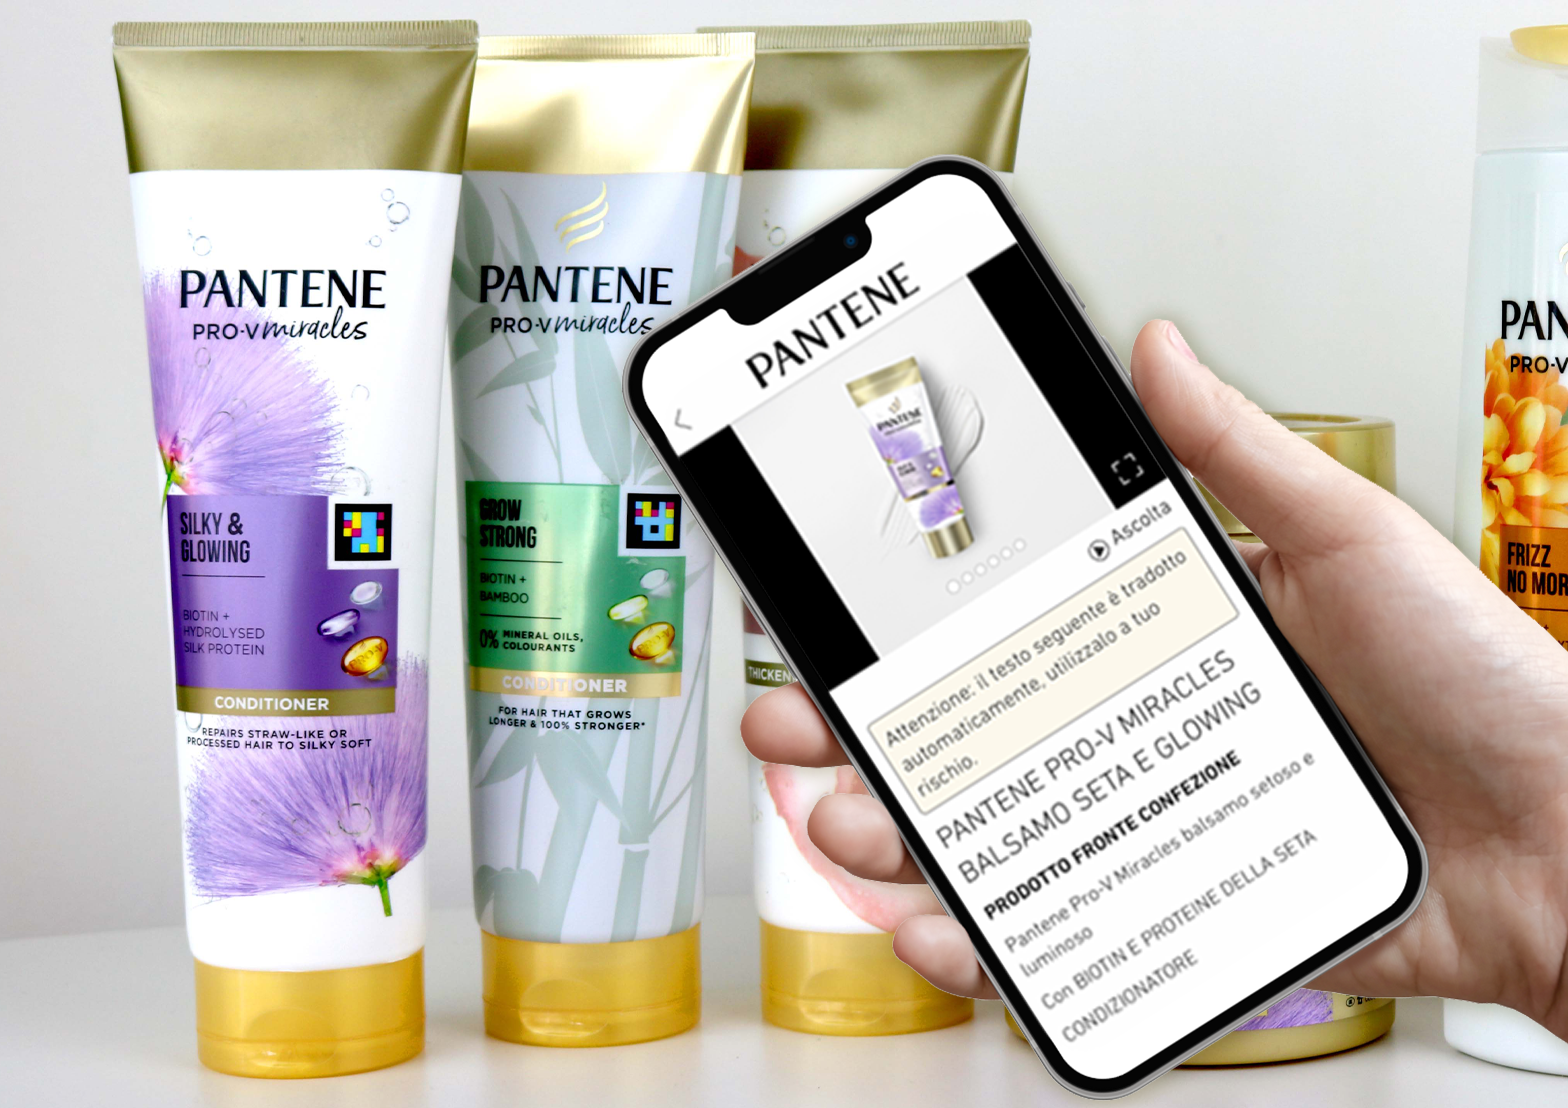 confezione di prodotto Pantene con codice Navilens e smartphone con visualizzato il contenuto leggibile con l'app Navilens GO e a seguire due smartphone con visualizzato il contenuto leggibile con l'app Navilens